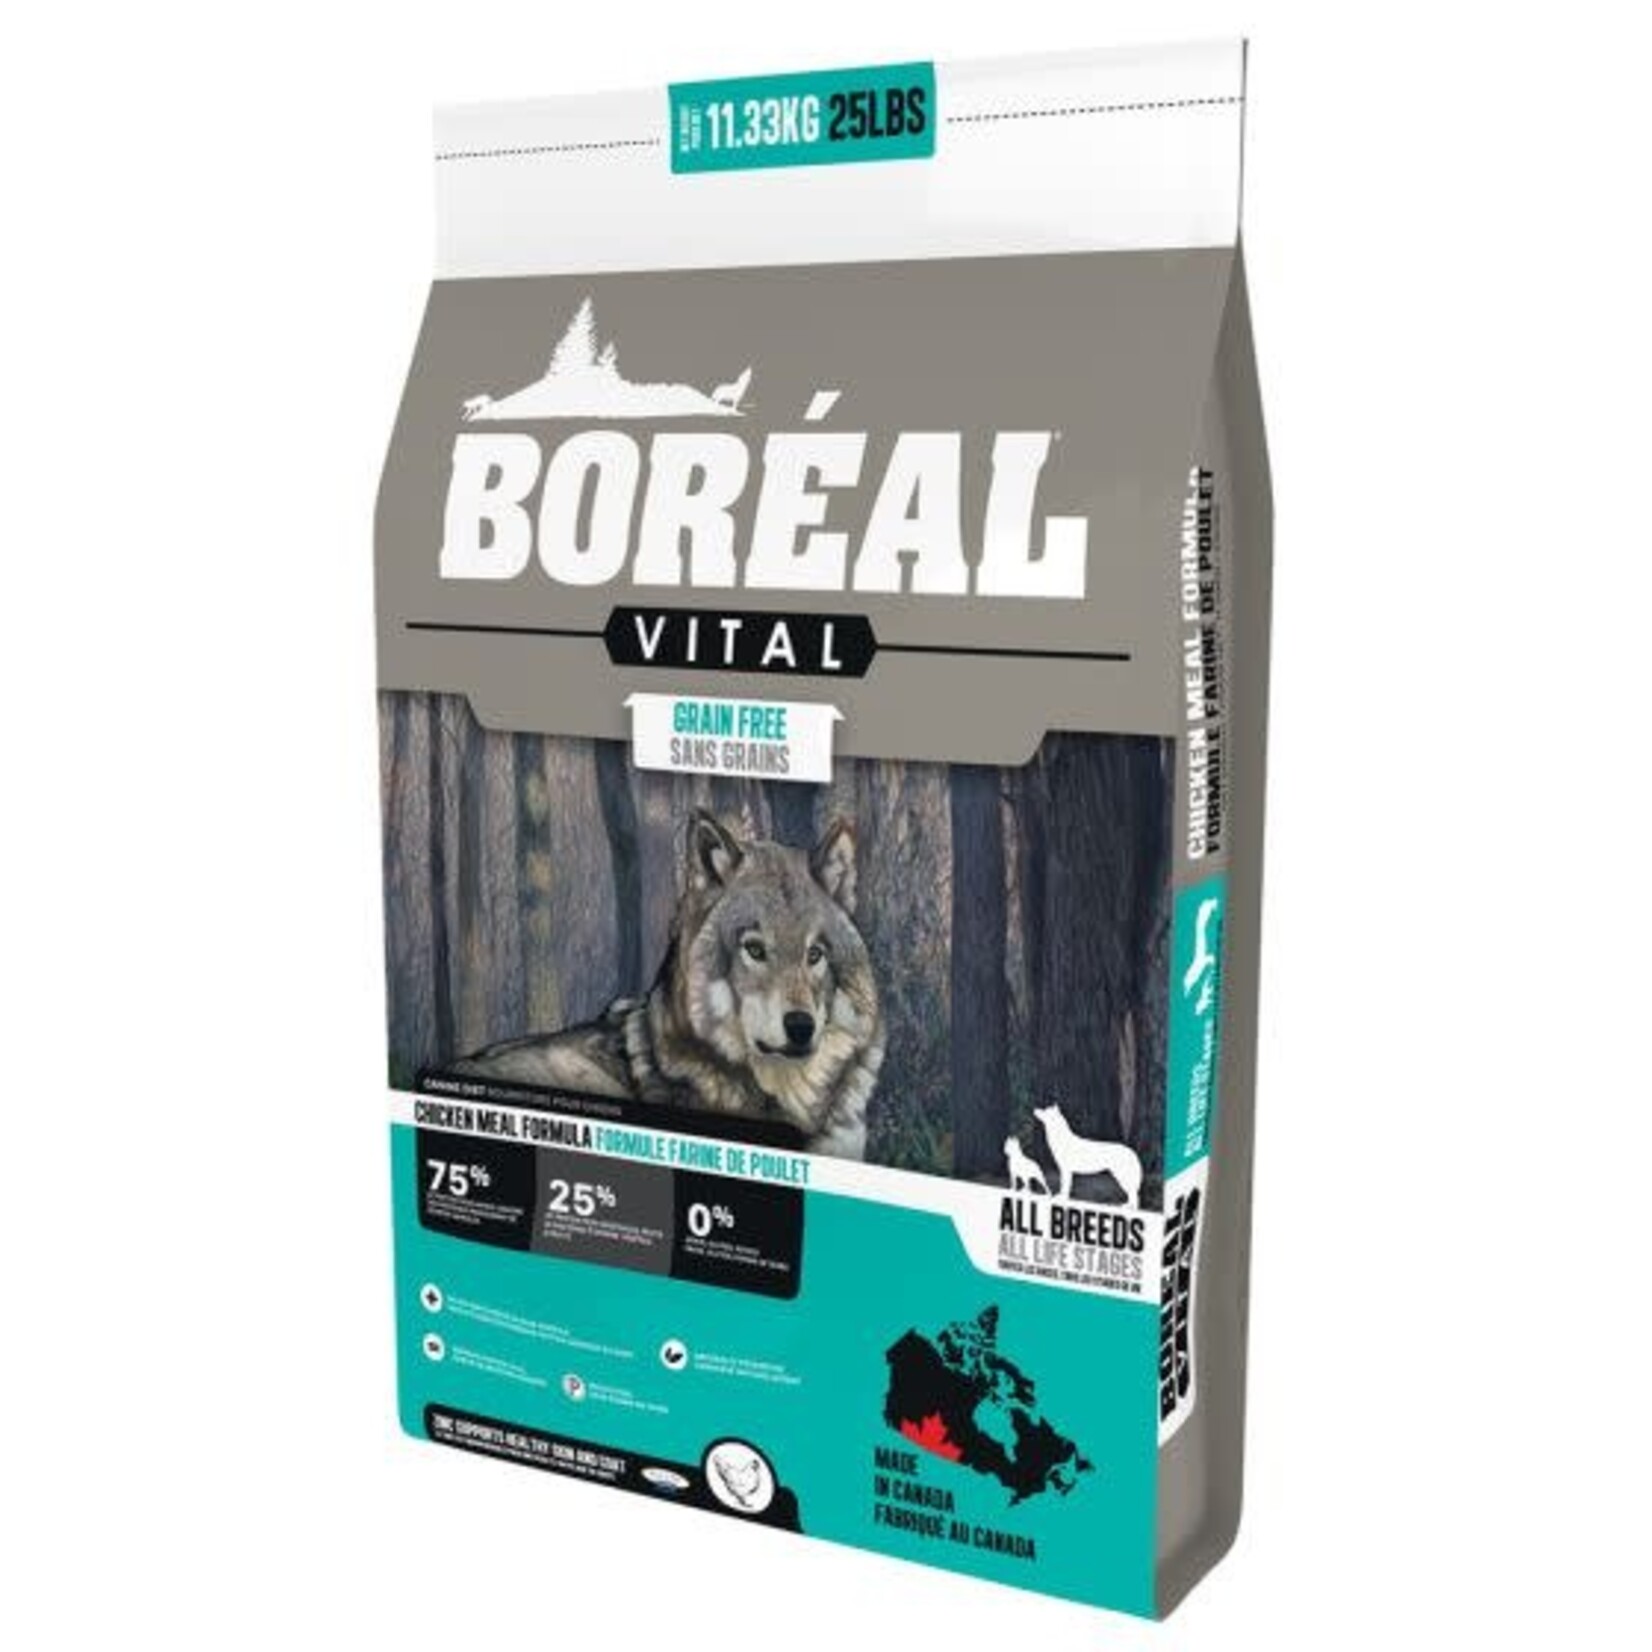 Boreal Boreal Vital Dry Dog Food